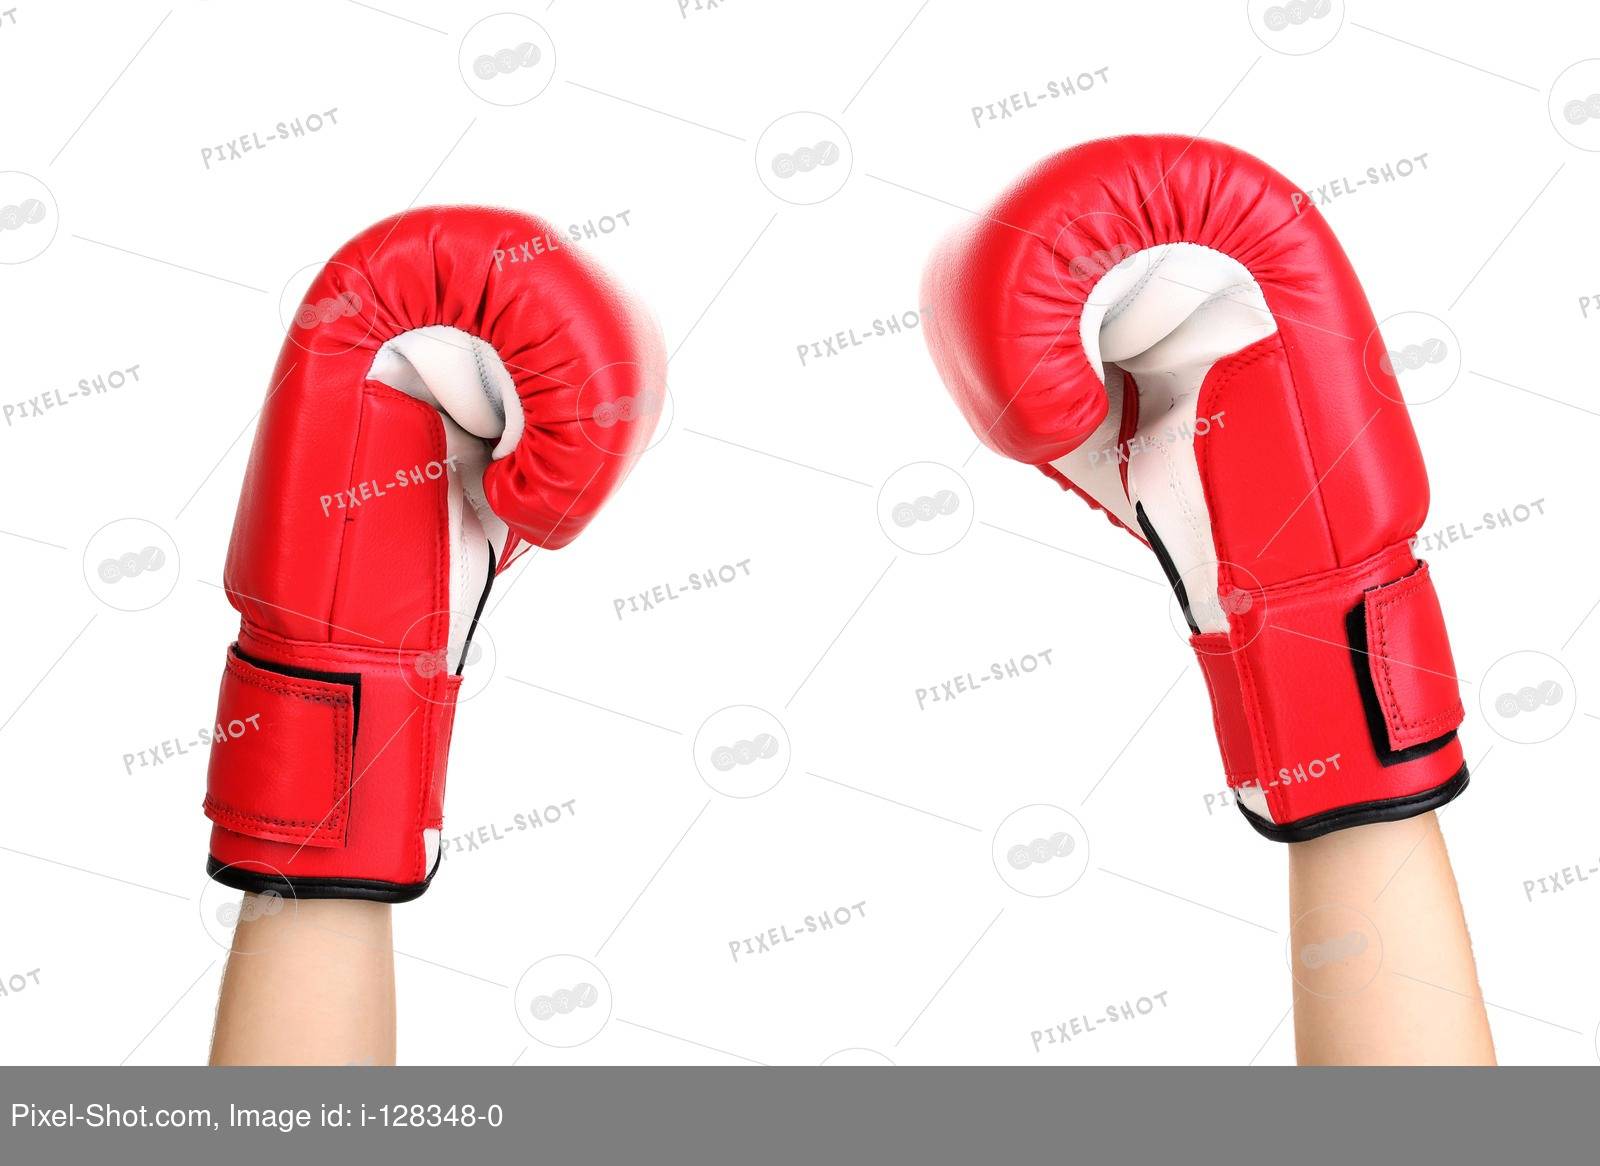 Как правильно выбрать боксерские перчатки в соответствии с размером и весом